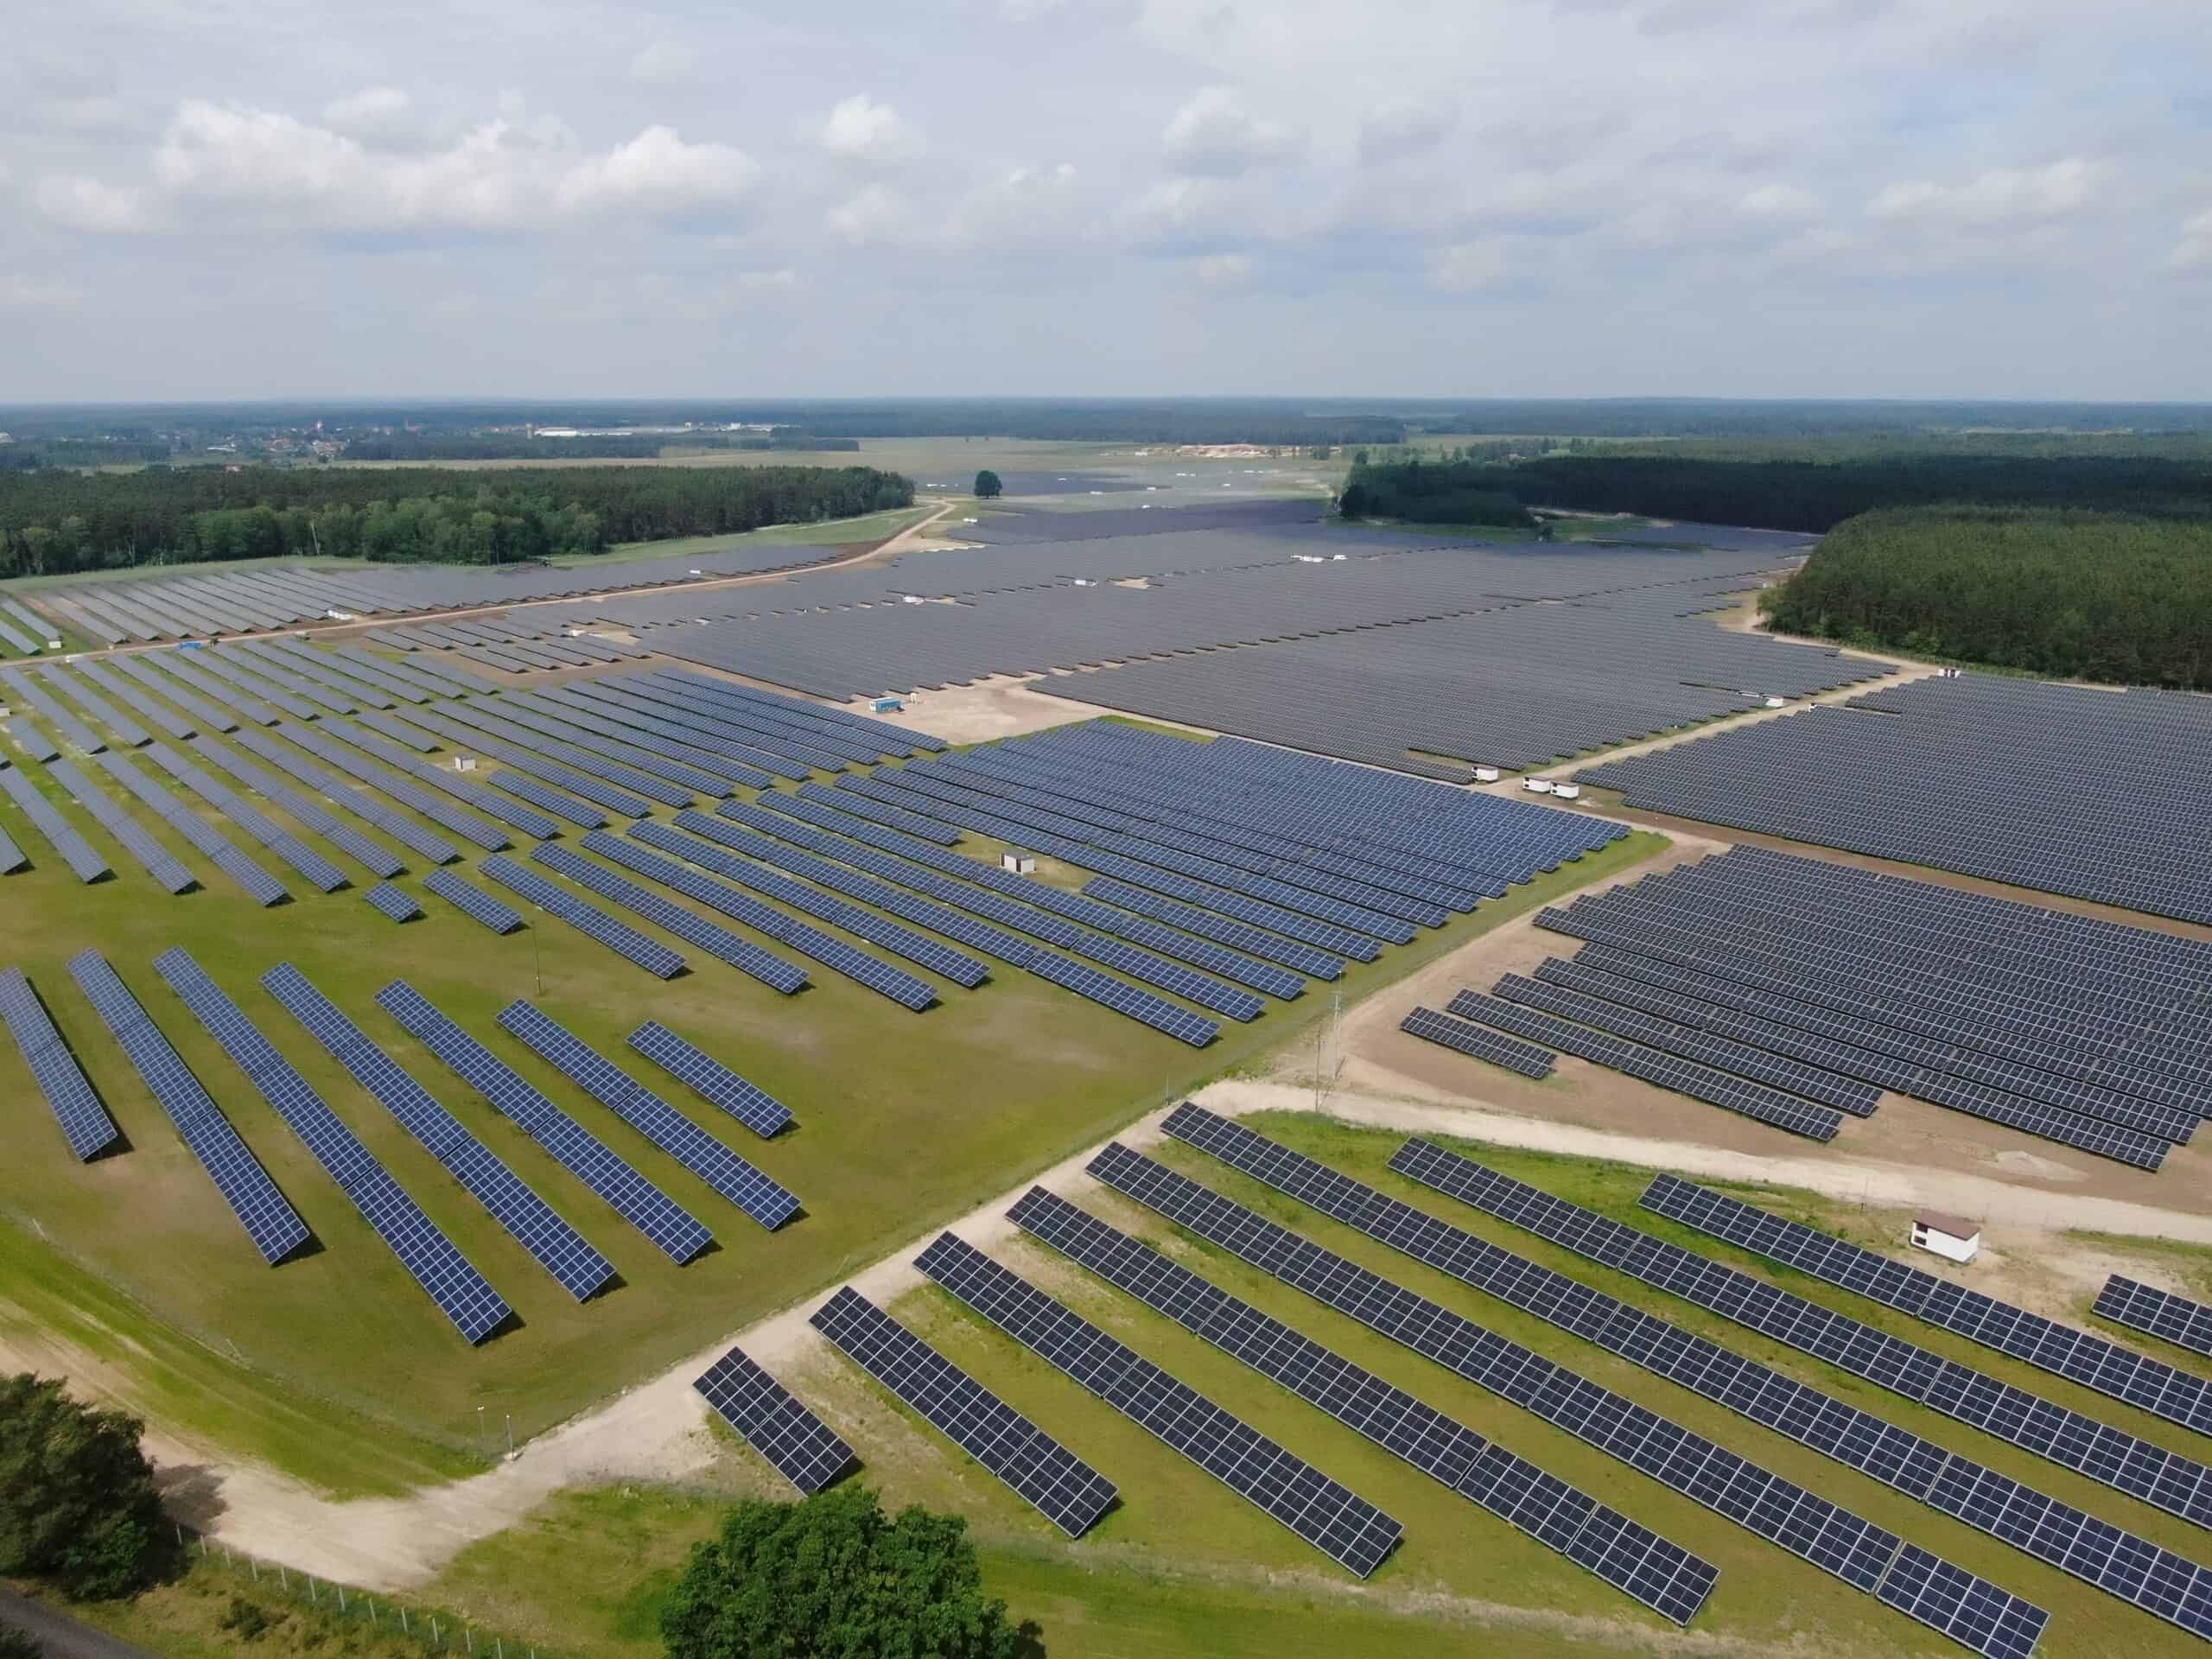 Zdjęcie przedstawia elektrownię słoneczną w Wielbarku.